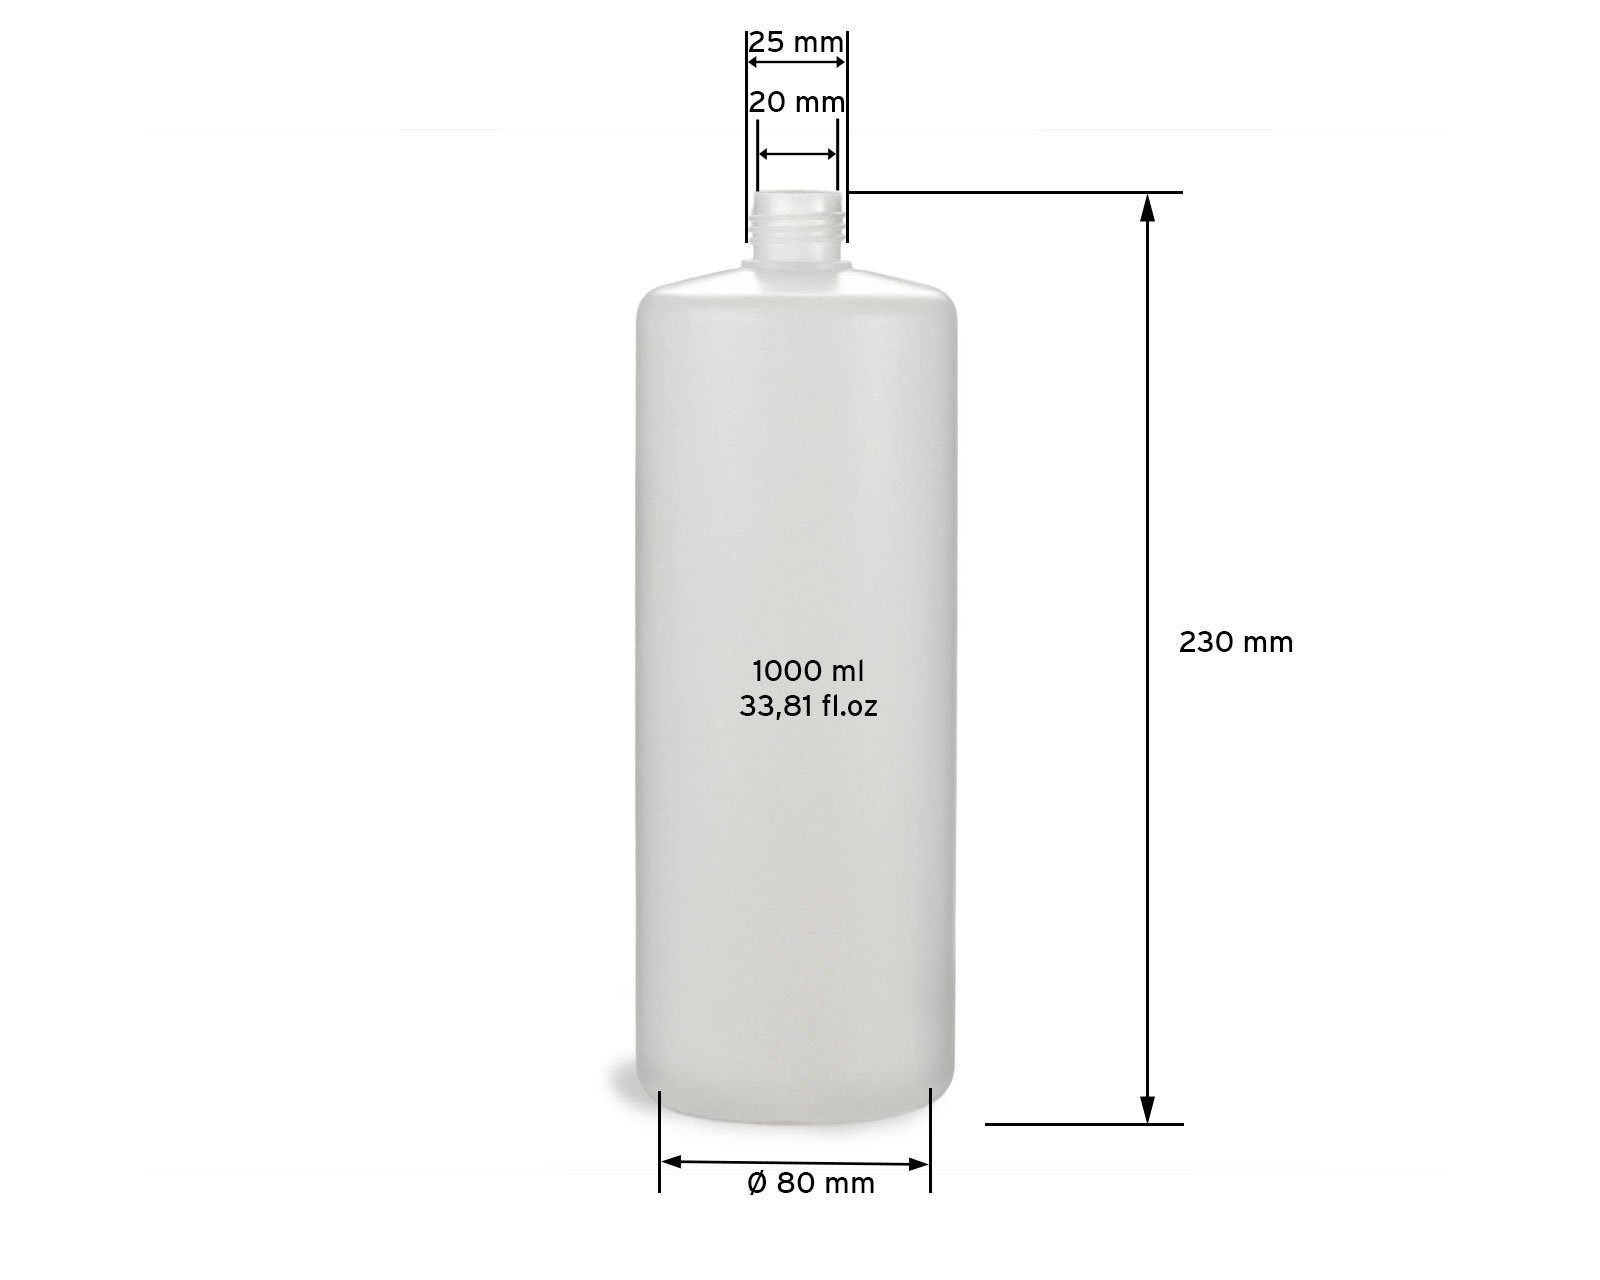 1000 ml (10 OCTOPUS G25, Rundflaschen 10x schwarze Kanister HDPE, Schraubverschlüsse St)